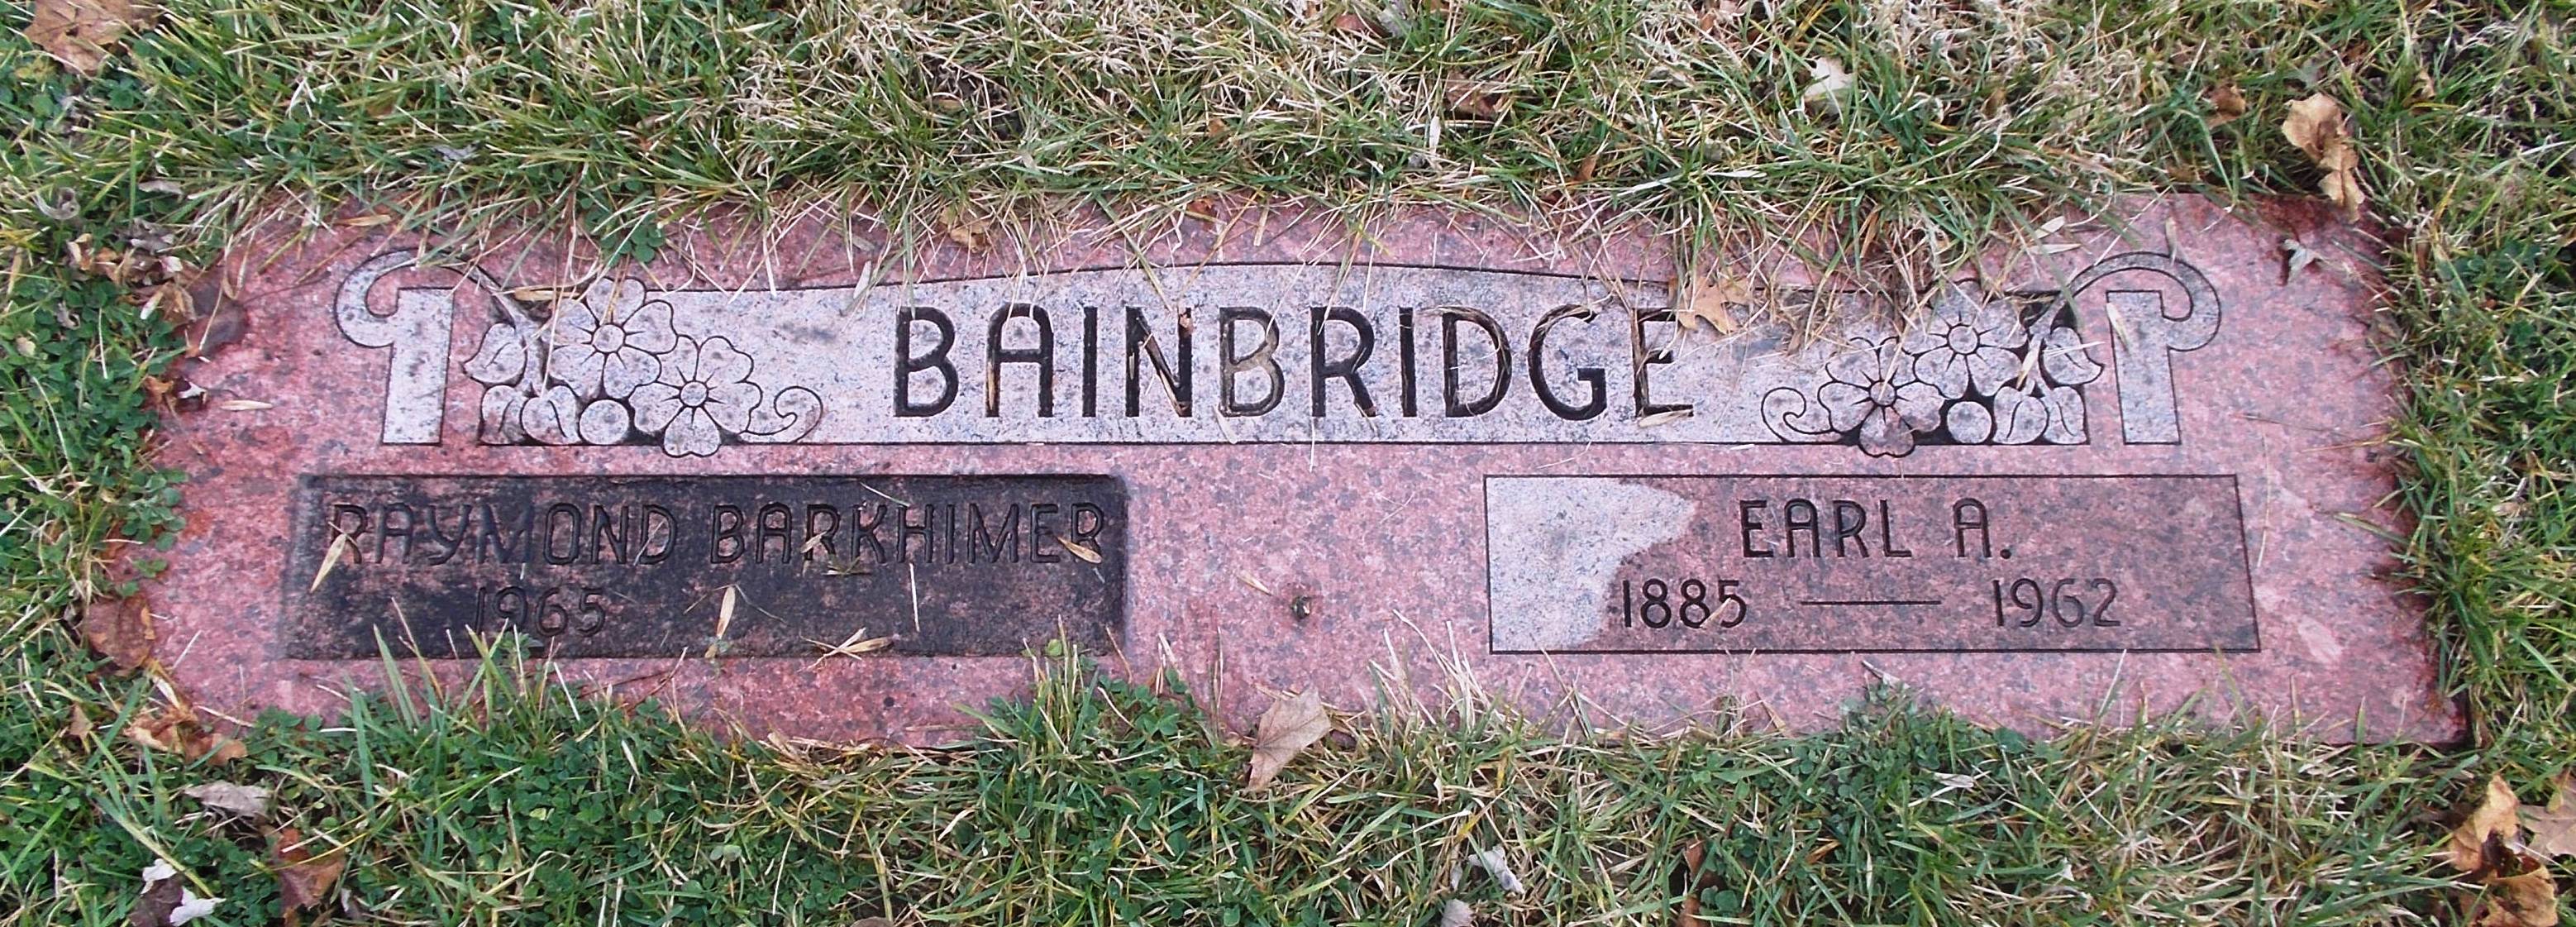 Earl A Bainbridge